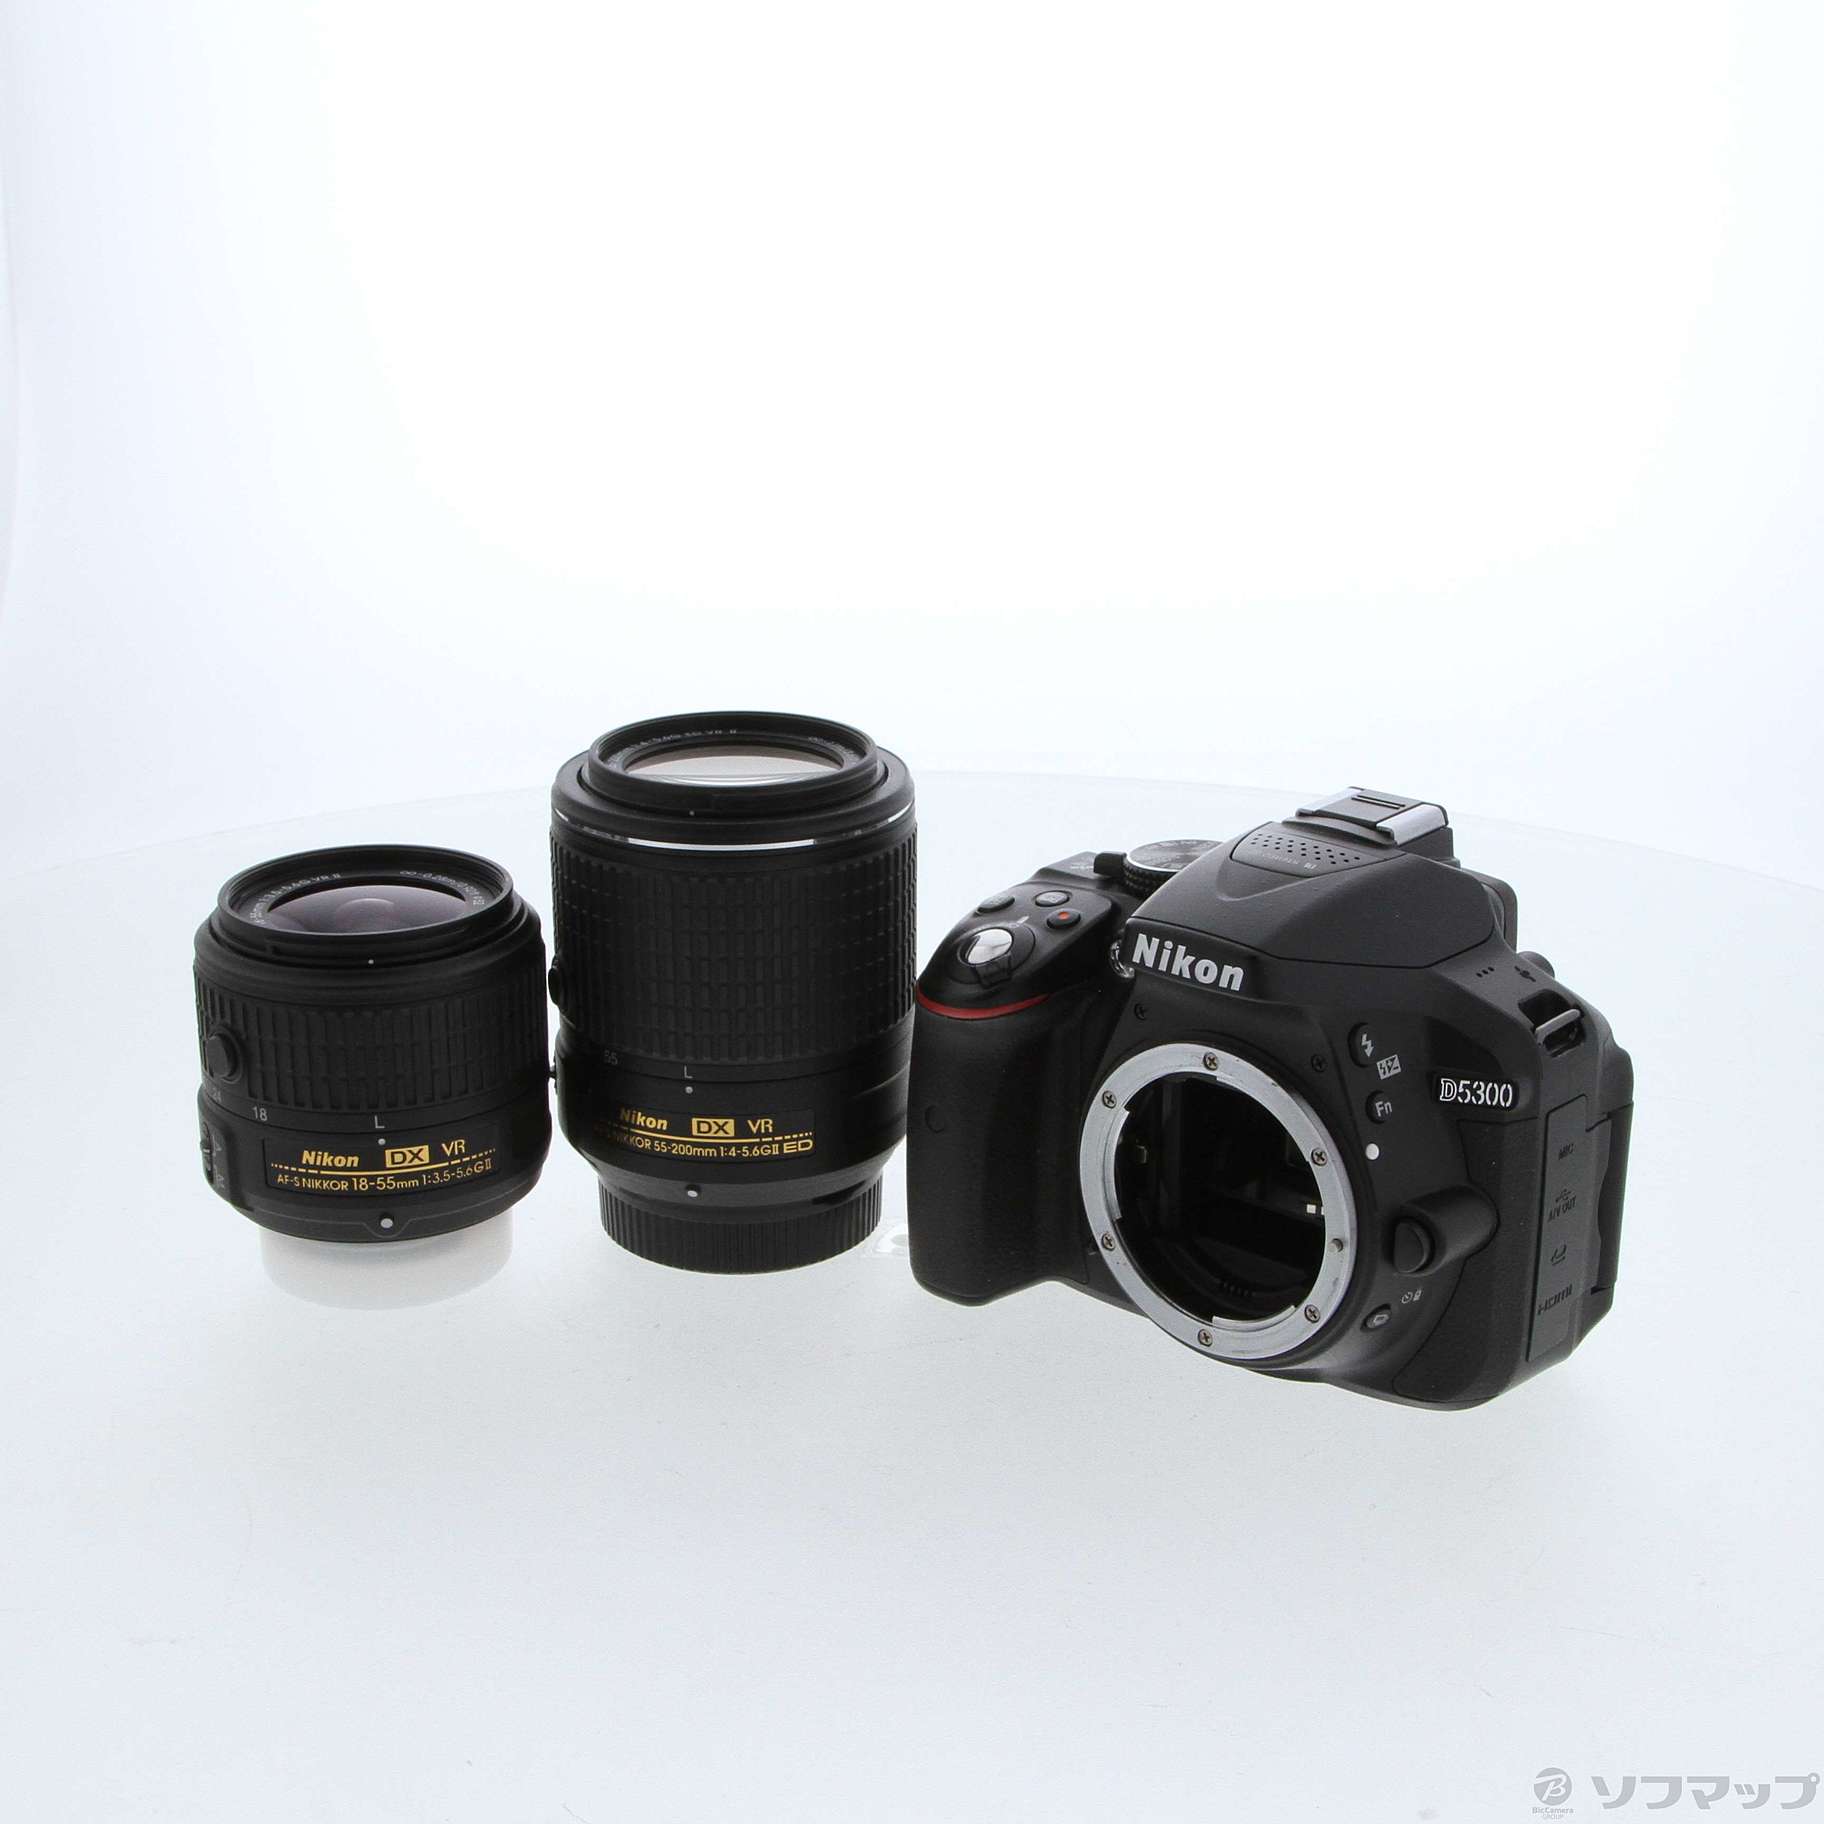 ニコンD5300 ダブルズームレンズ 再出品 - カメラ、光学機器